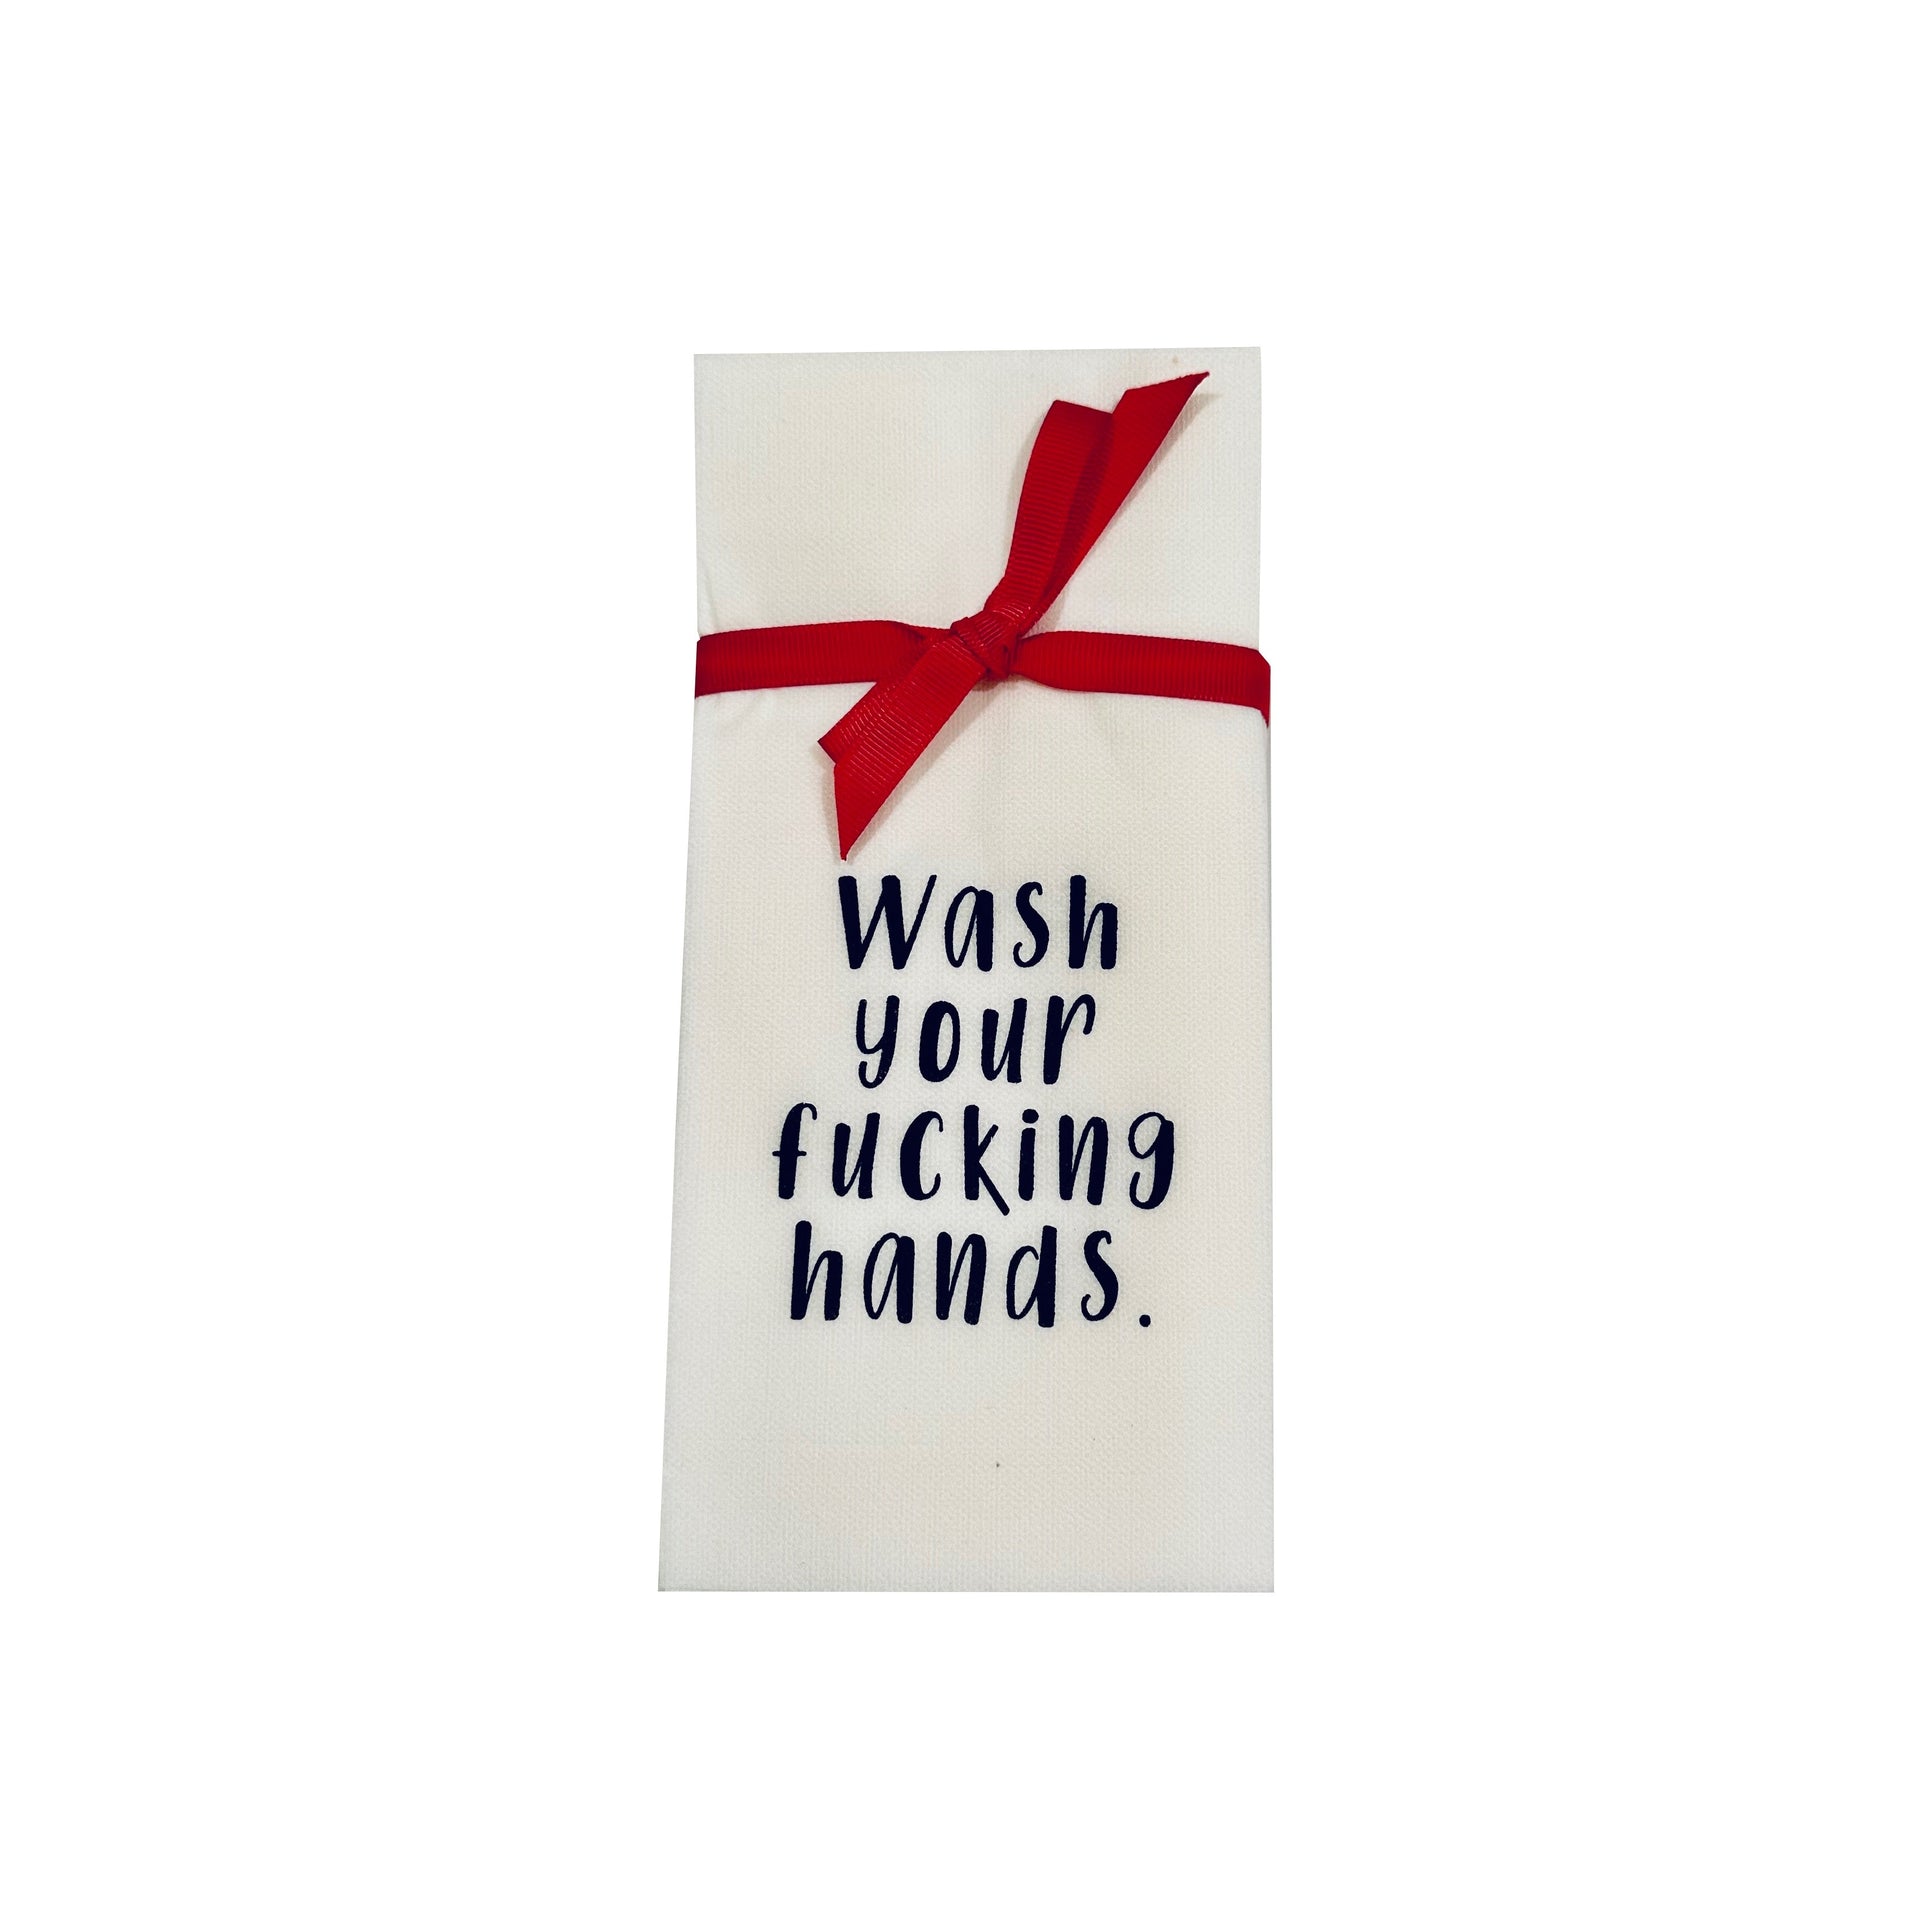 DON'T GIVE IN TO FRUMPY UNDIES Hallmark Linen Hand Towel Hand Wash